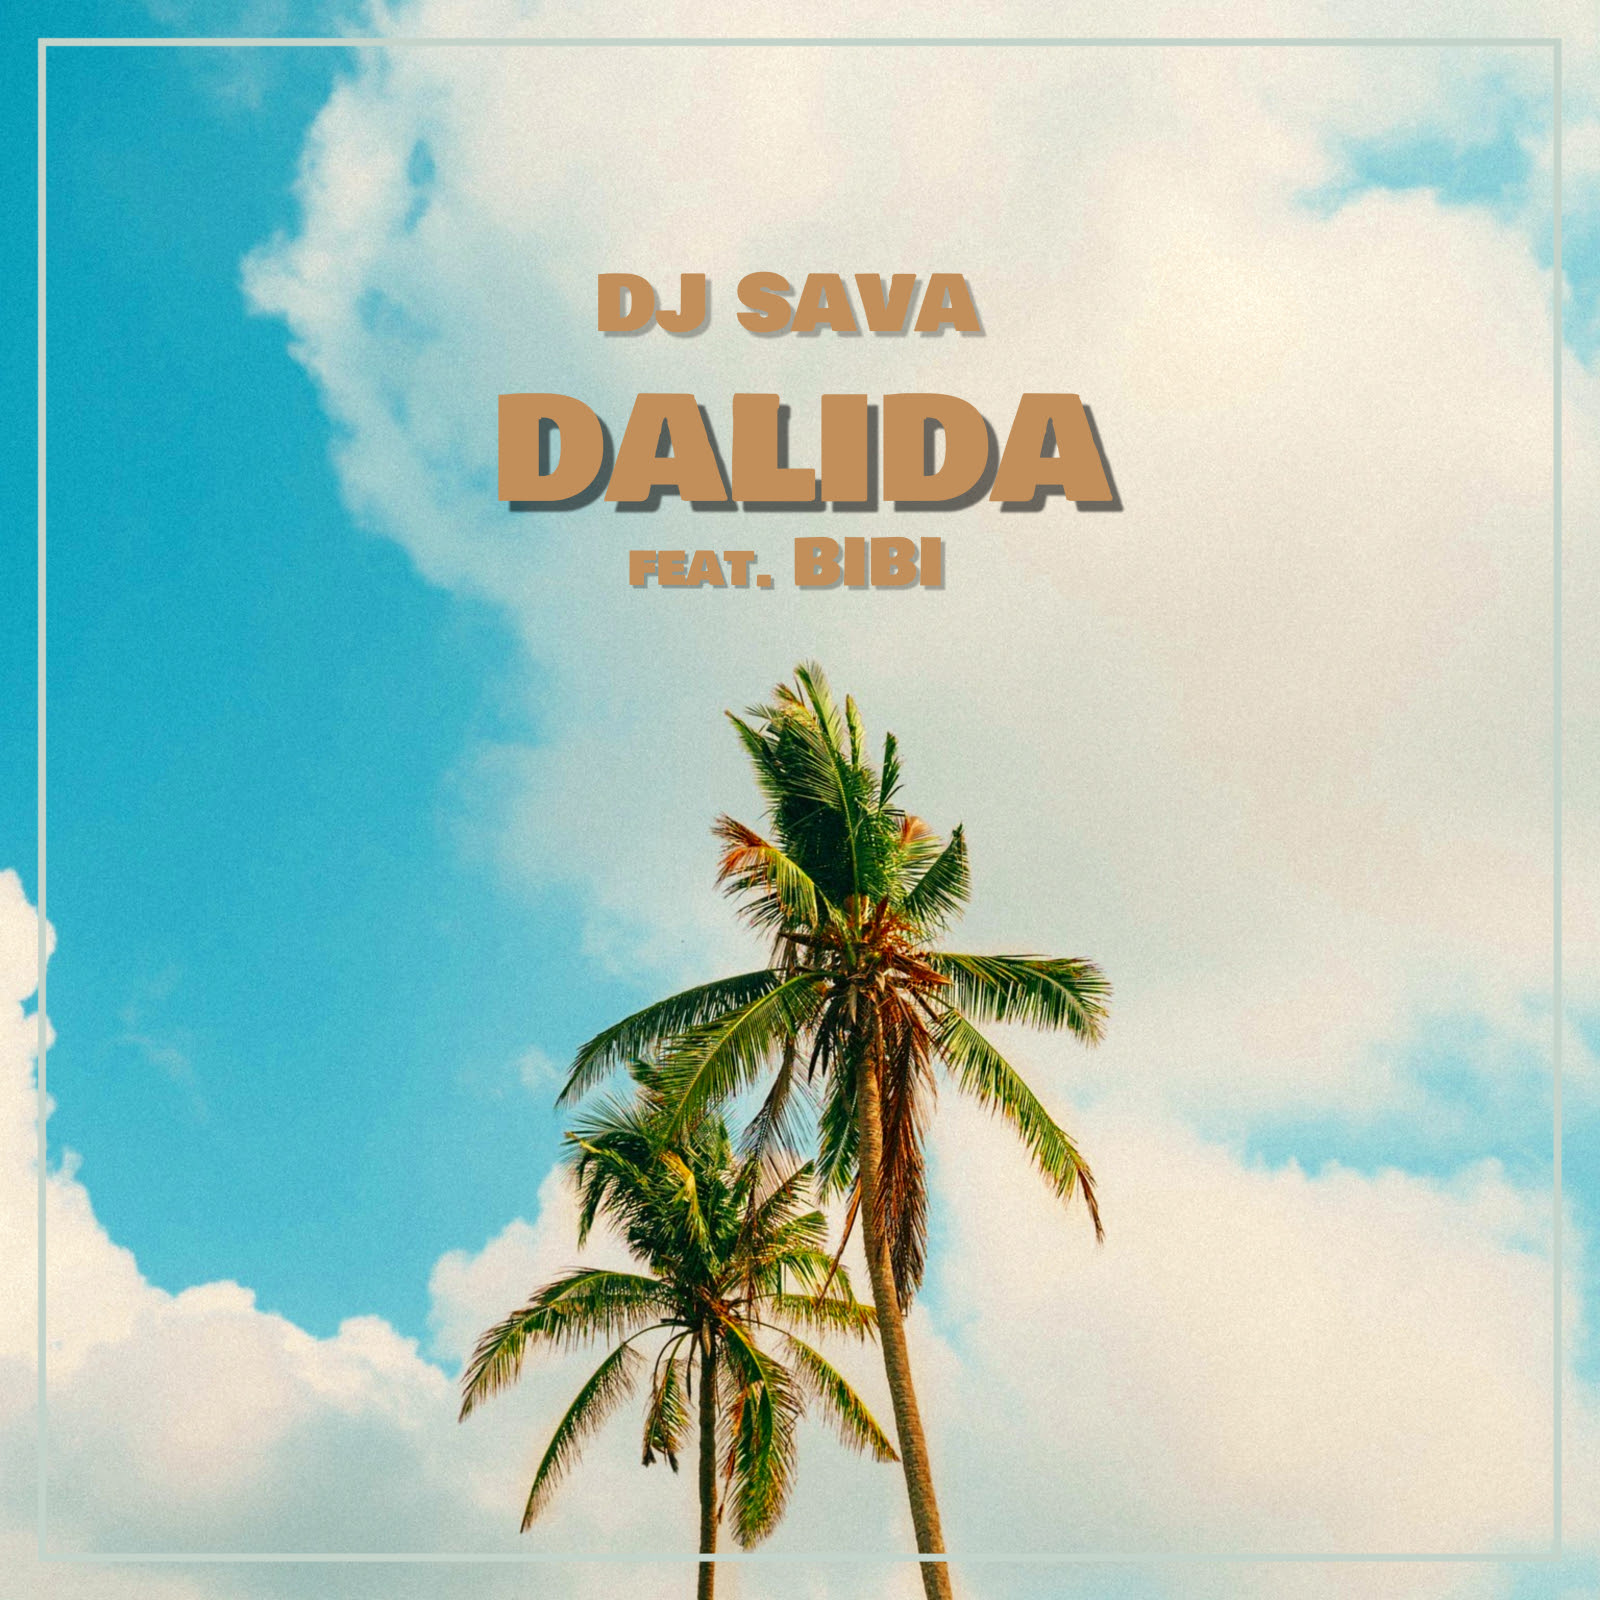 DJ Sava a colaborat pentru prima dată cu BiBi și a lansat „Dalida”. Sună bine?